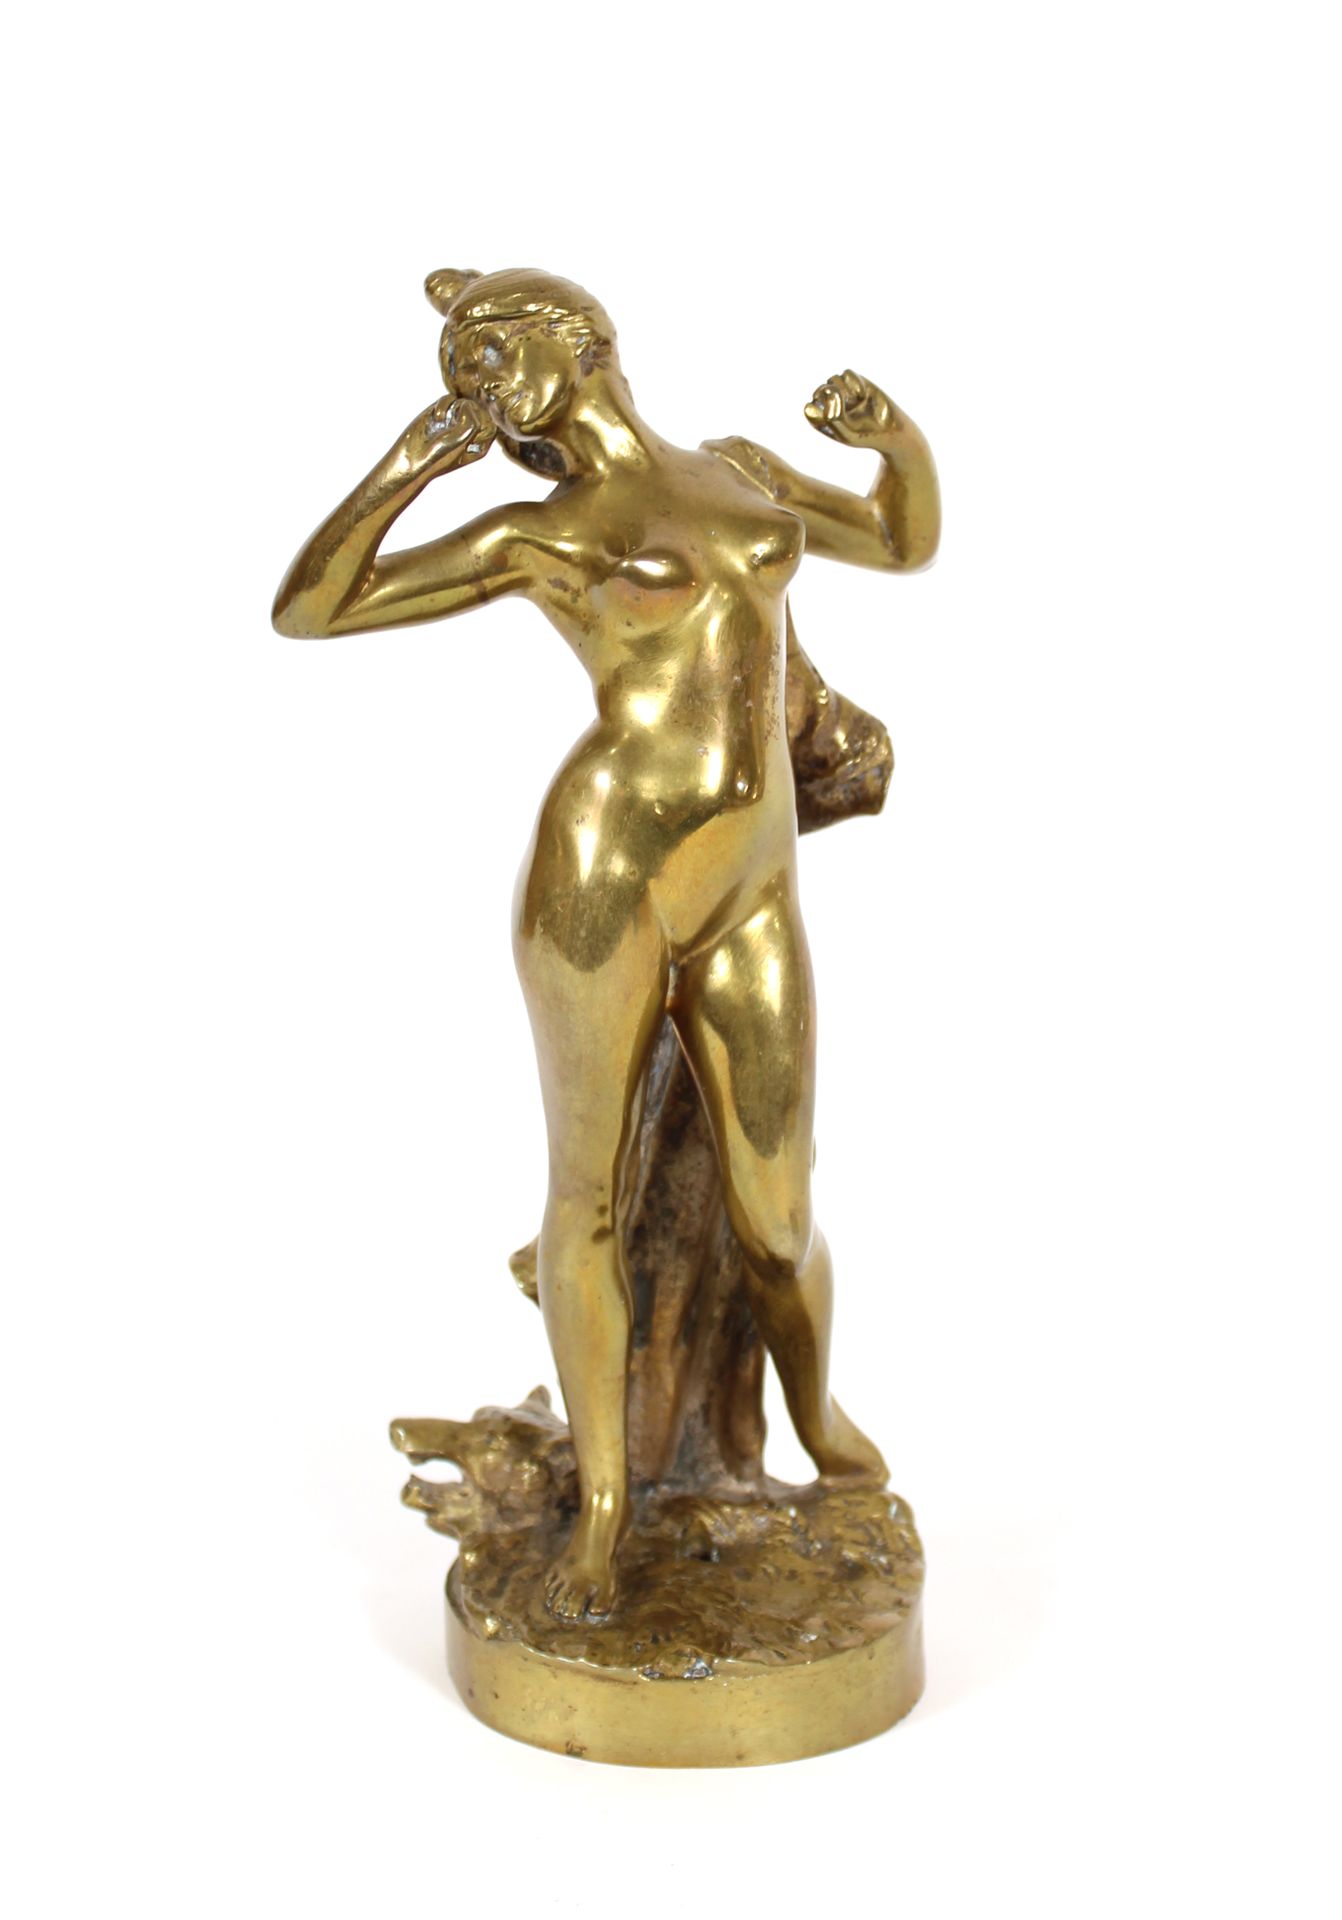 Null Nach Urbain BASSET
Frau mit Wecker
Bronze mit goldener Patina sign.
H. 21,5&hellip;